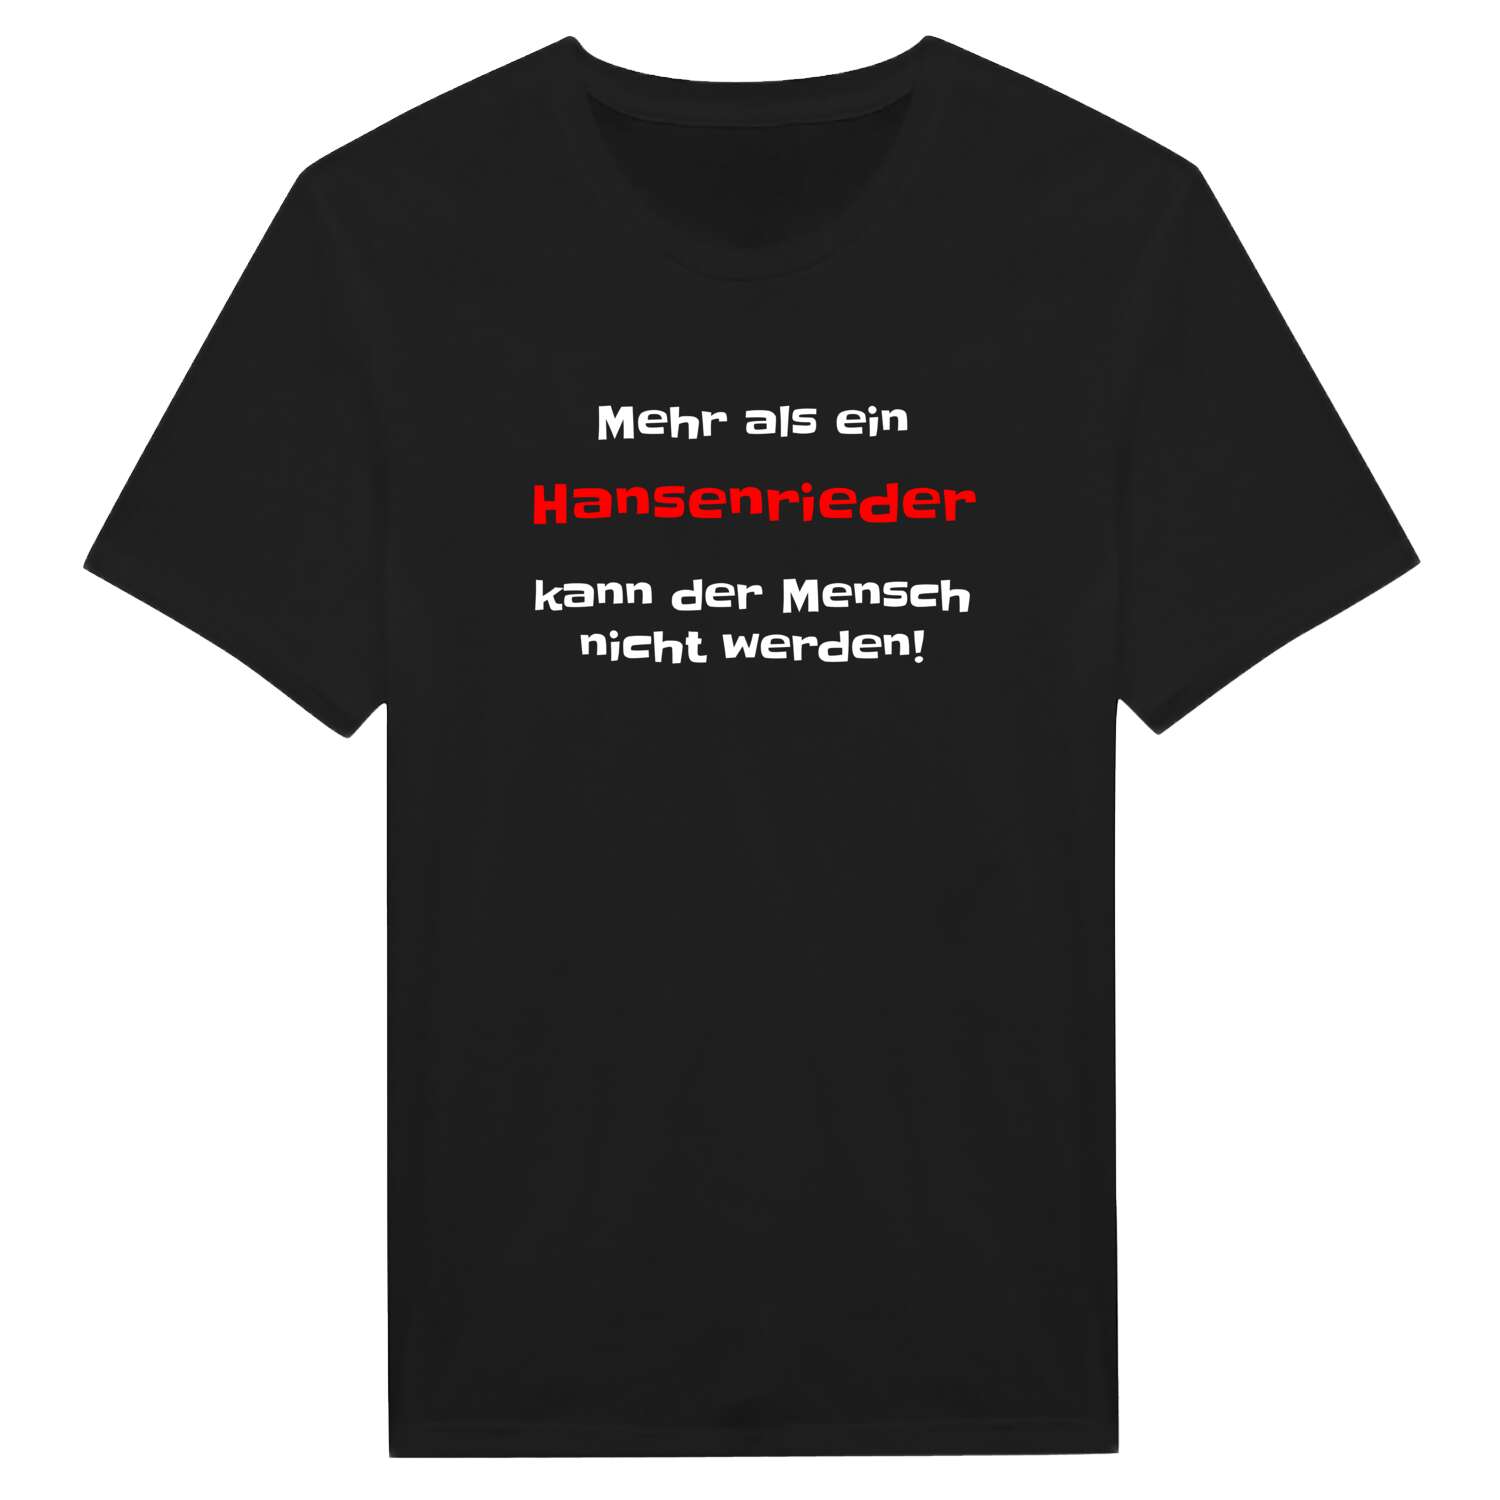 Hansenried T-Shirt »Mehr als ein«